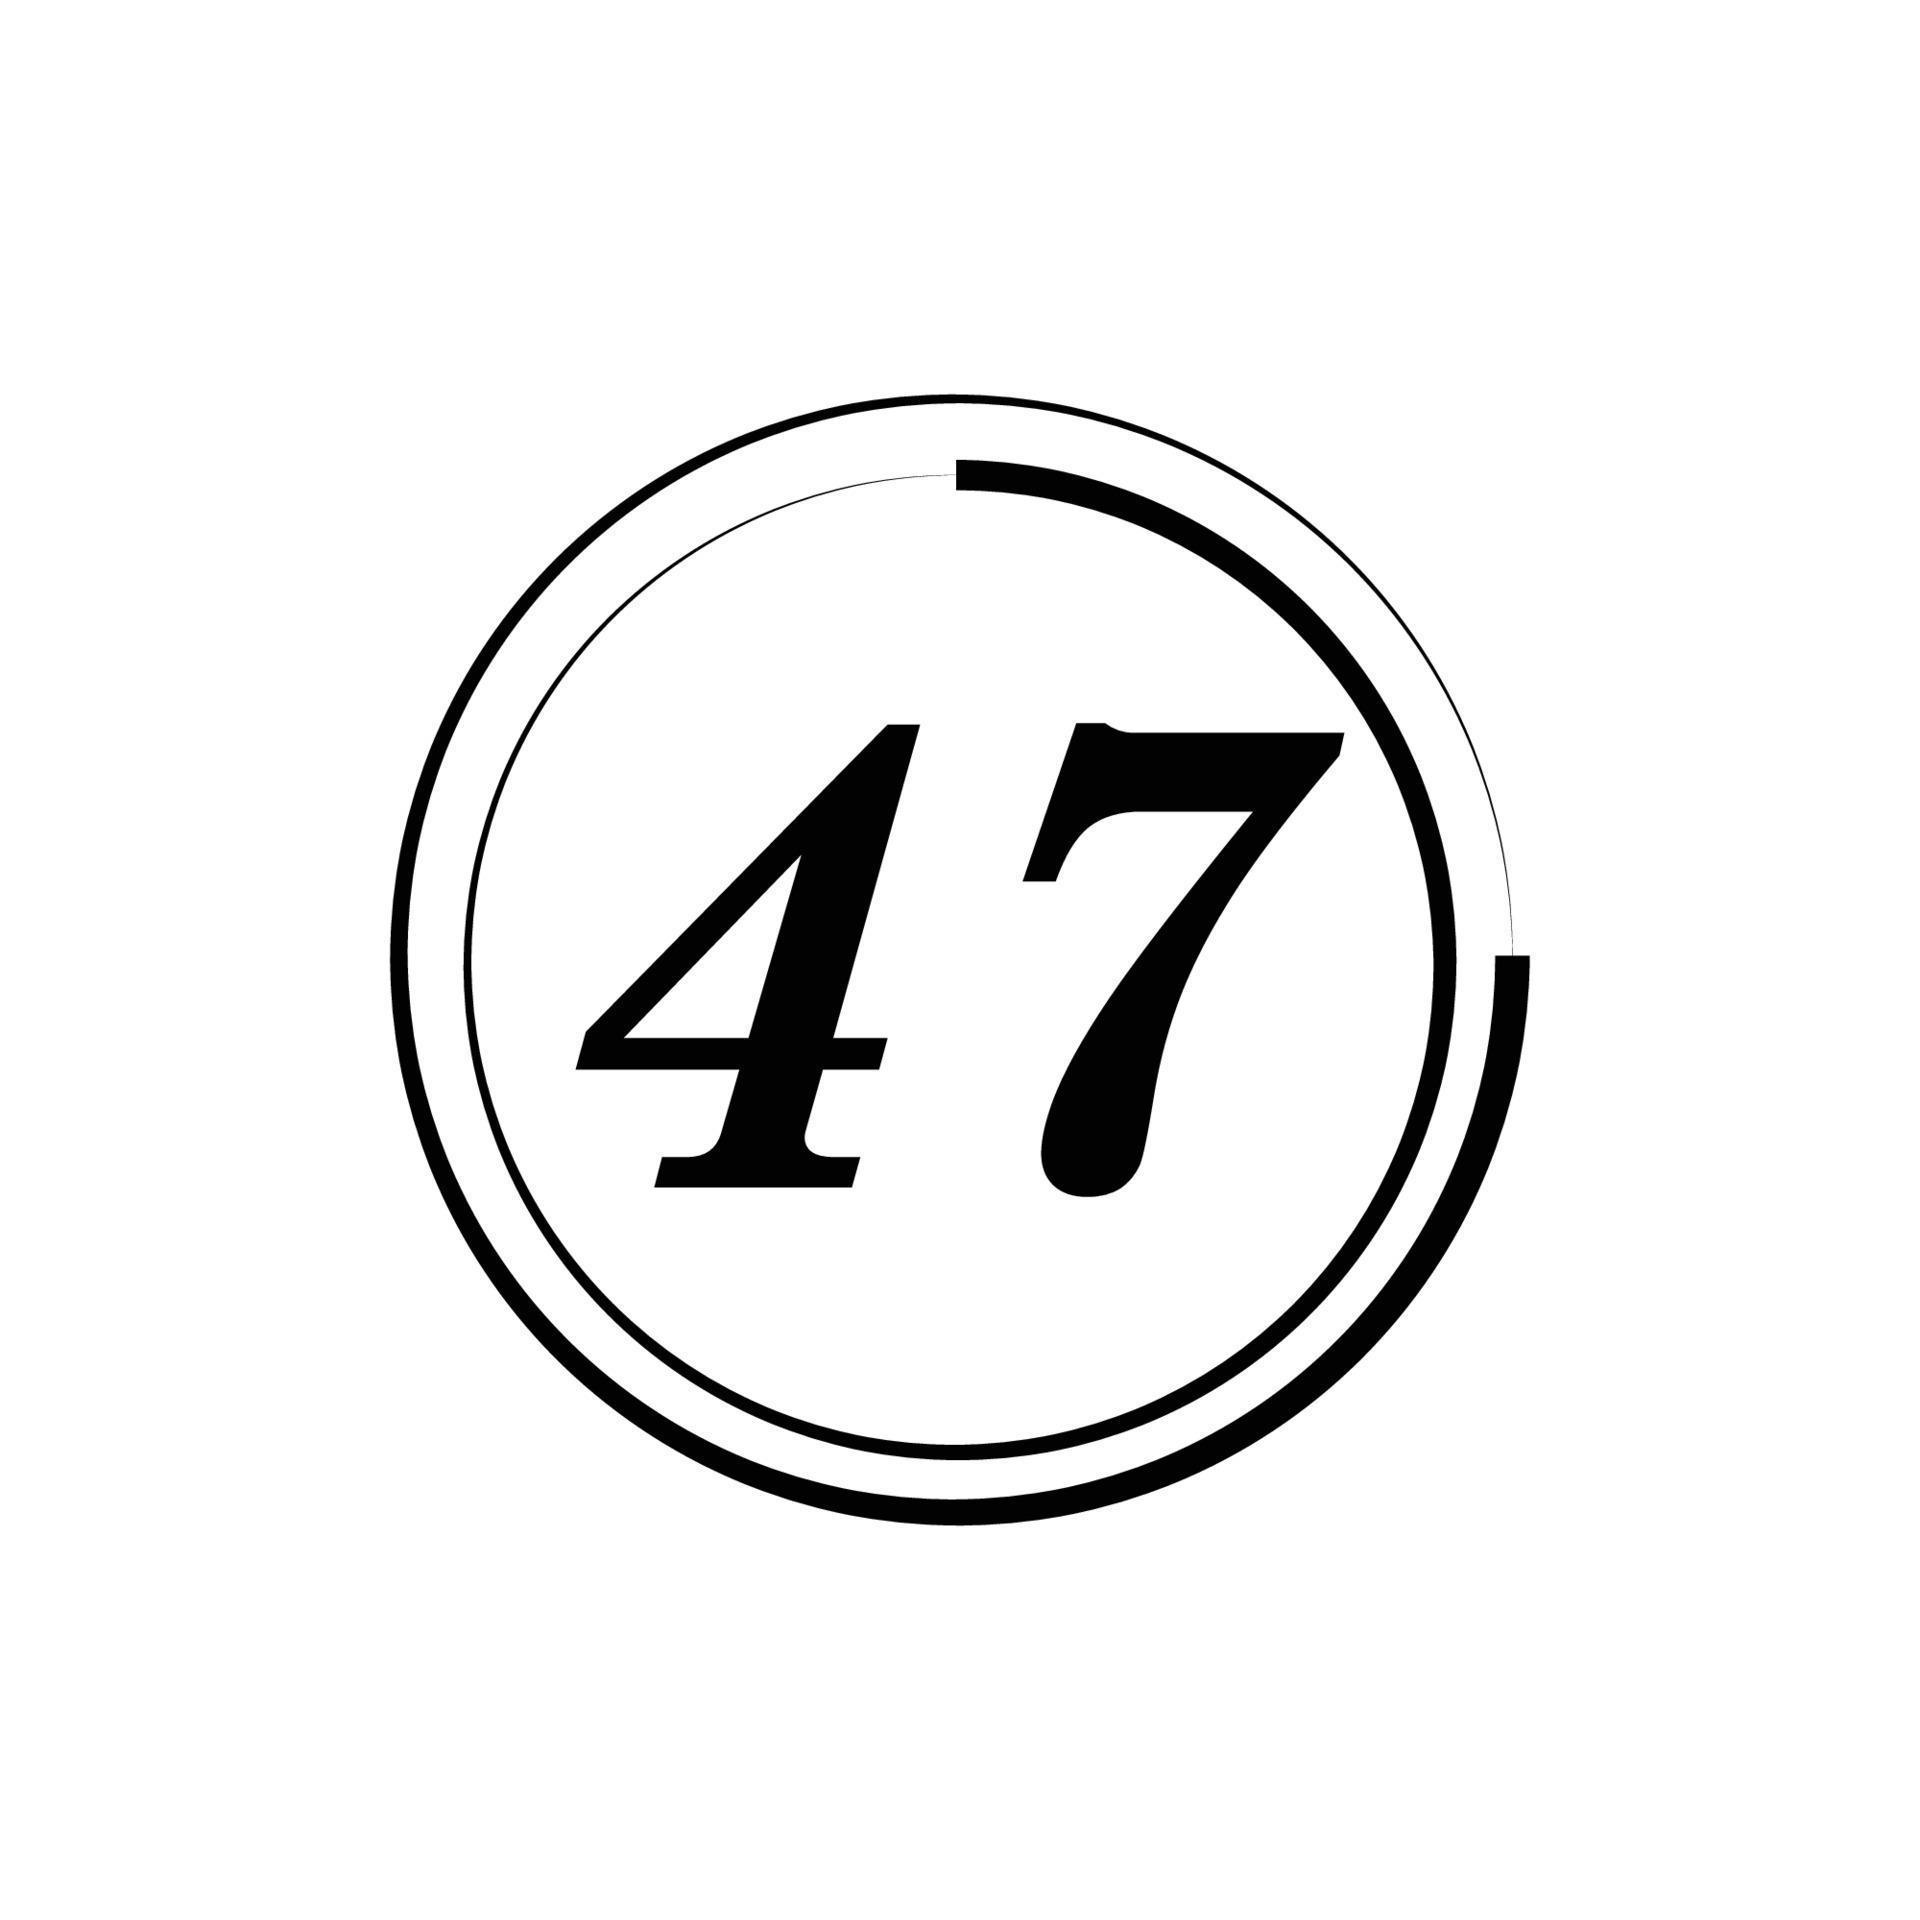 Number logo design 13819011 Vector Art at Vecteezy